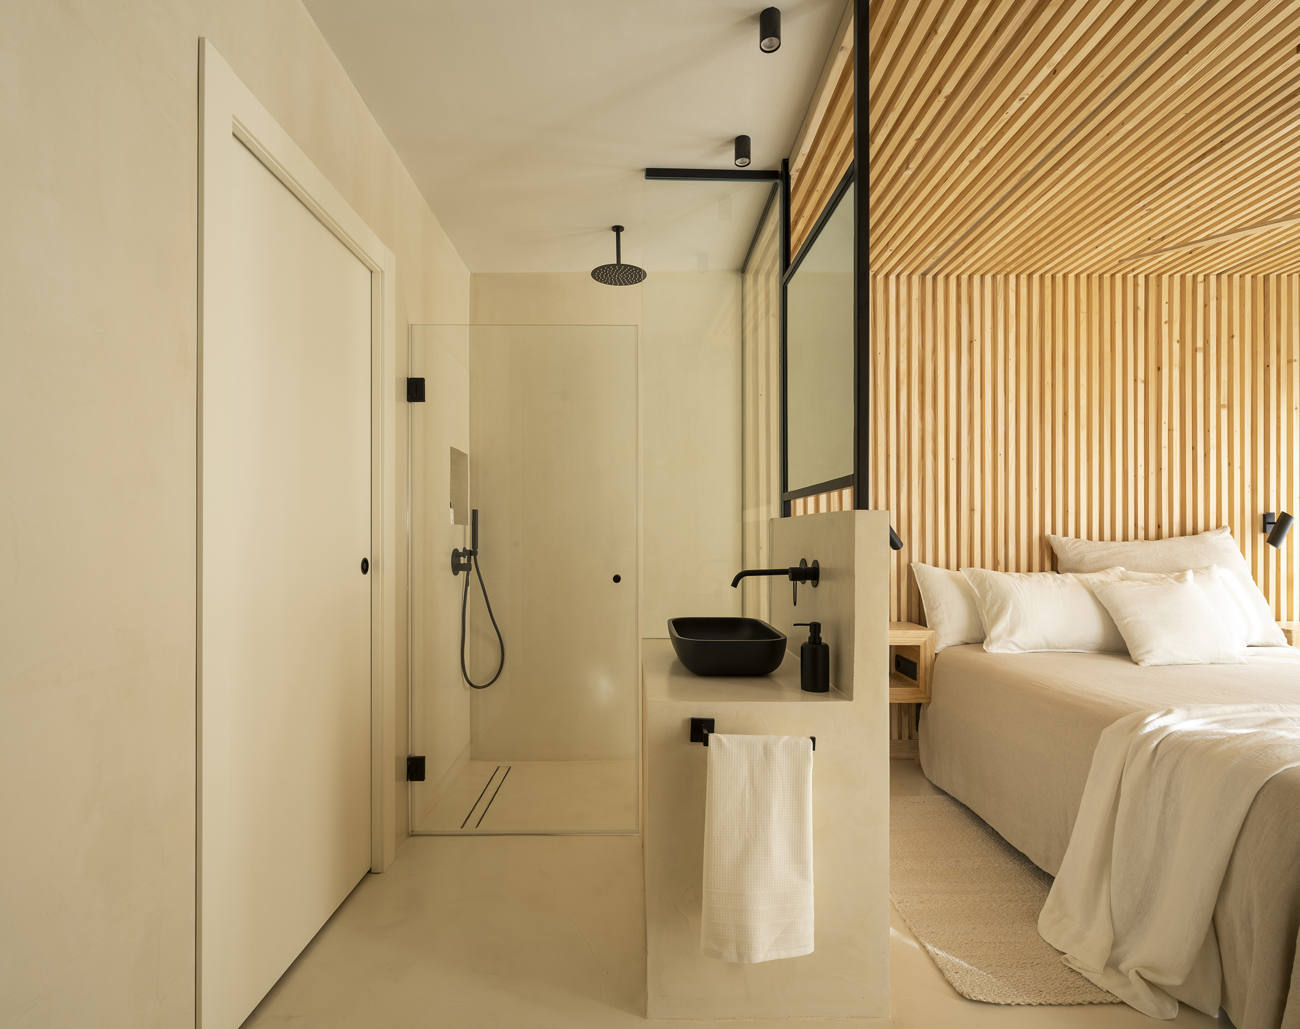  Chambre d'hôtel avec salle de bain attenante et douche en béton ciré à Nîmes.